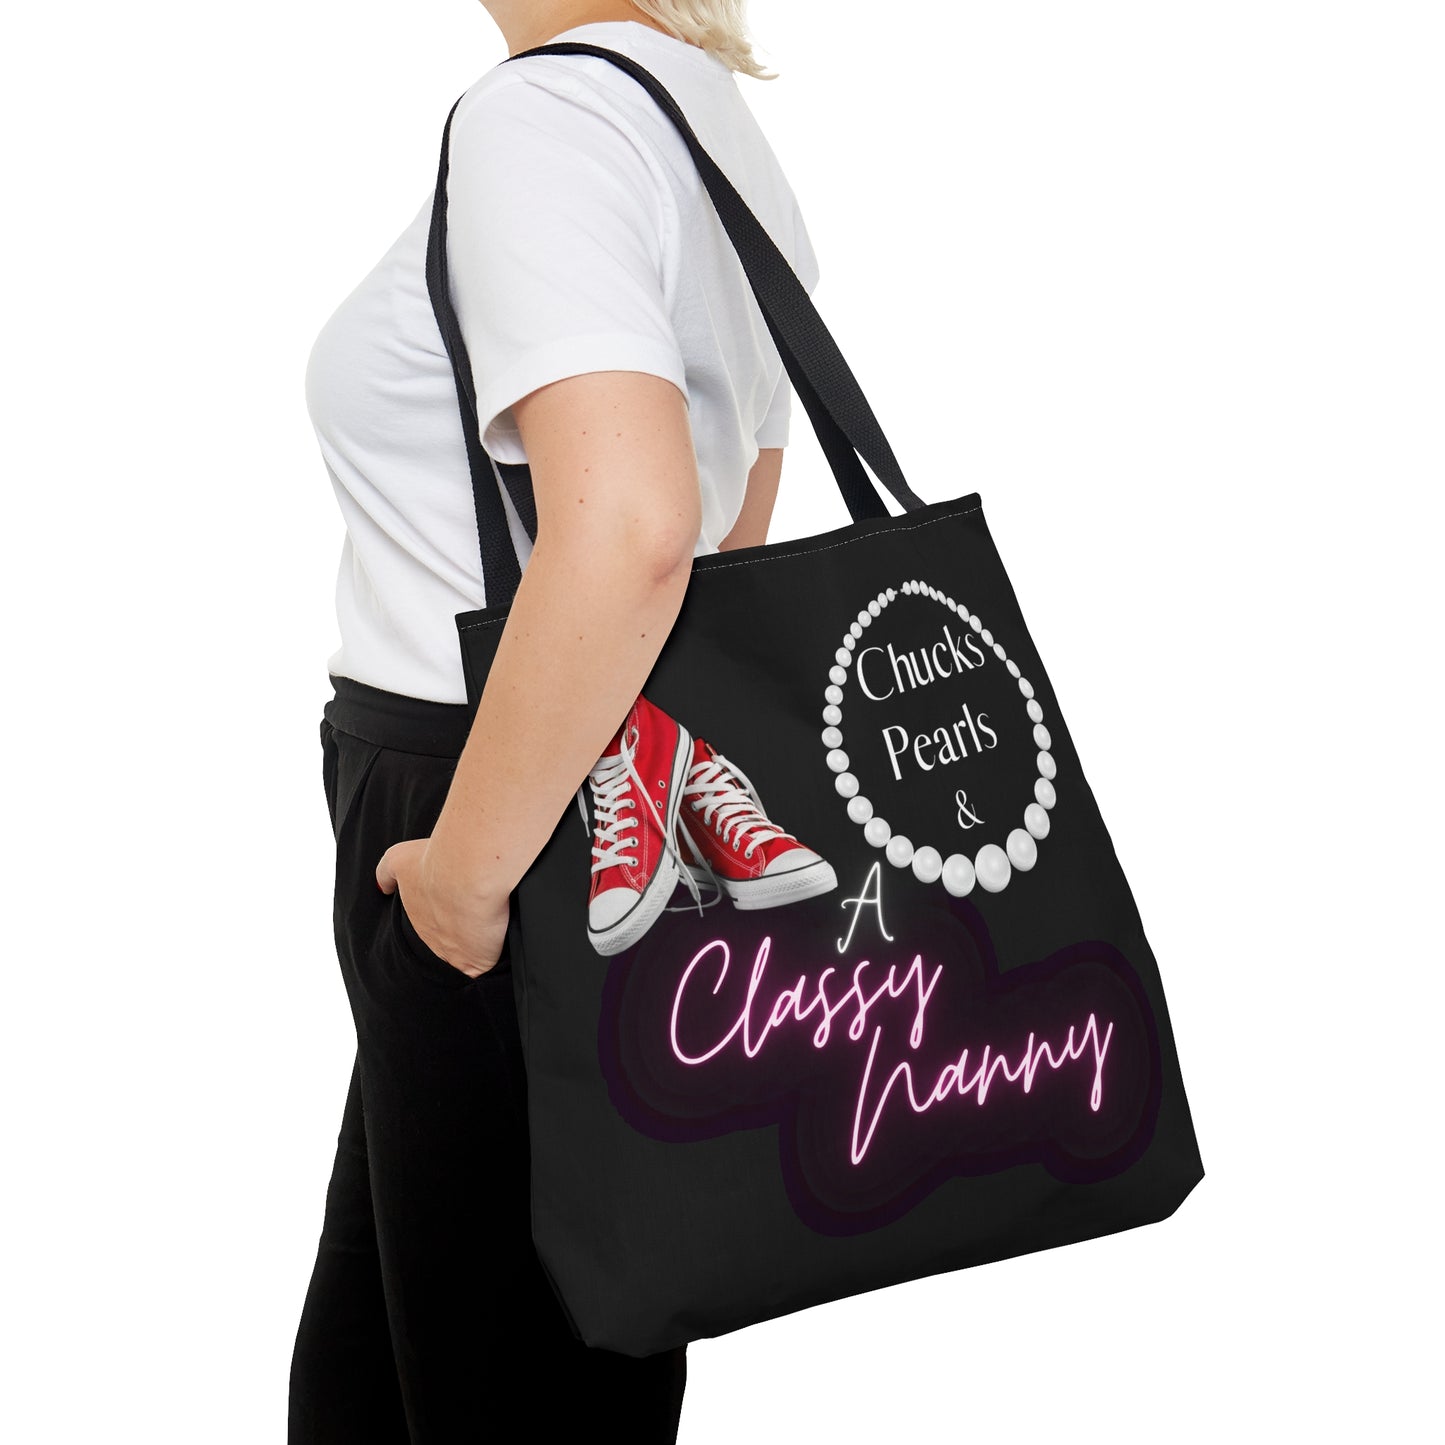 "Chucks, Pearls, and a Classy Nanny" AOP Tote Bag